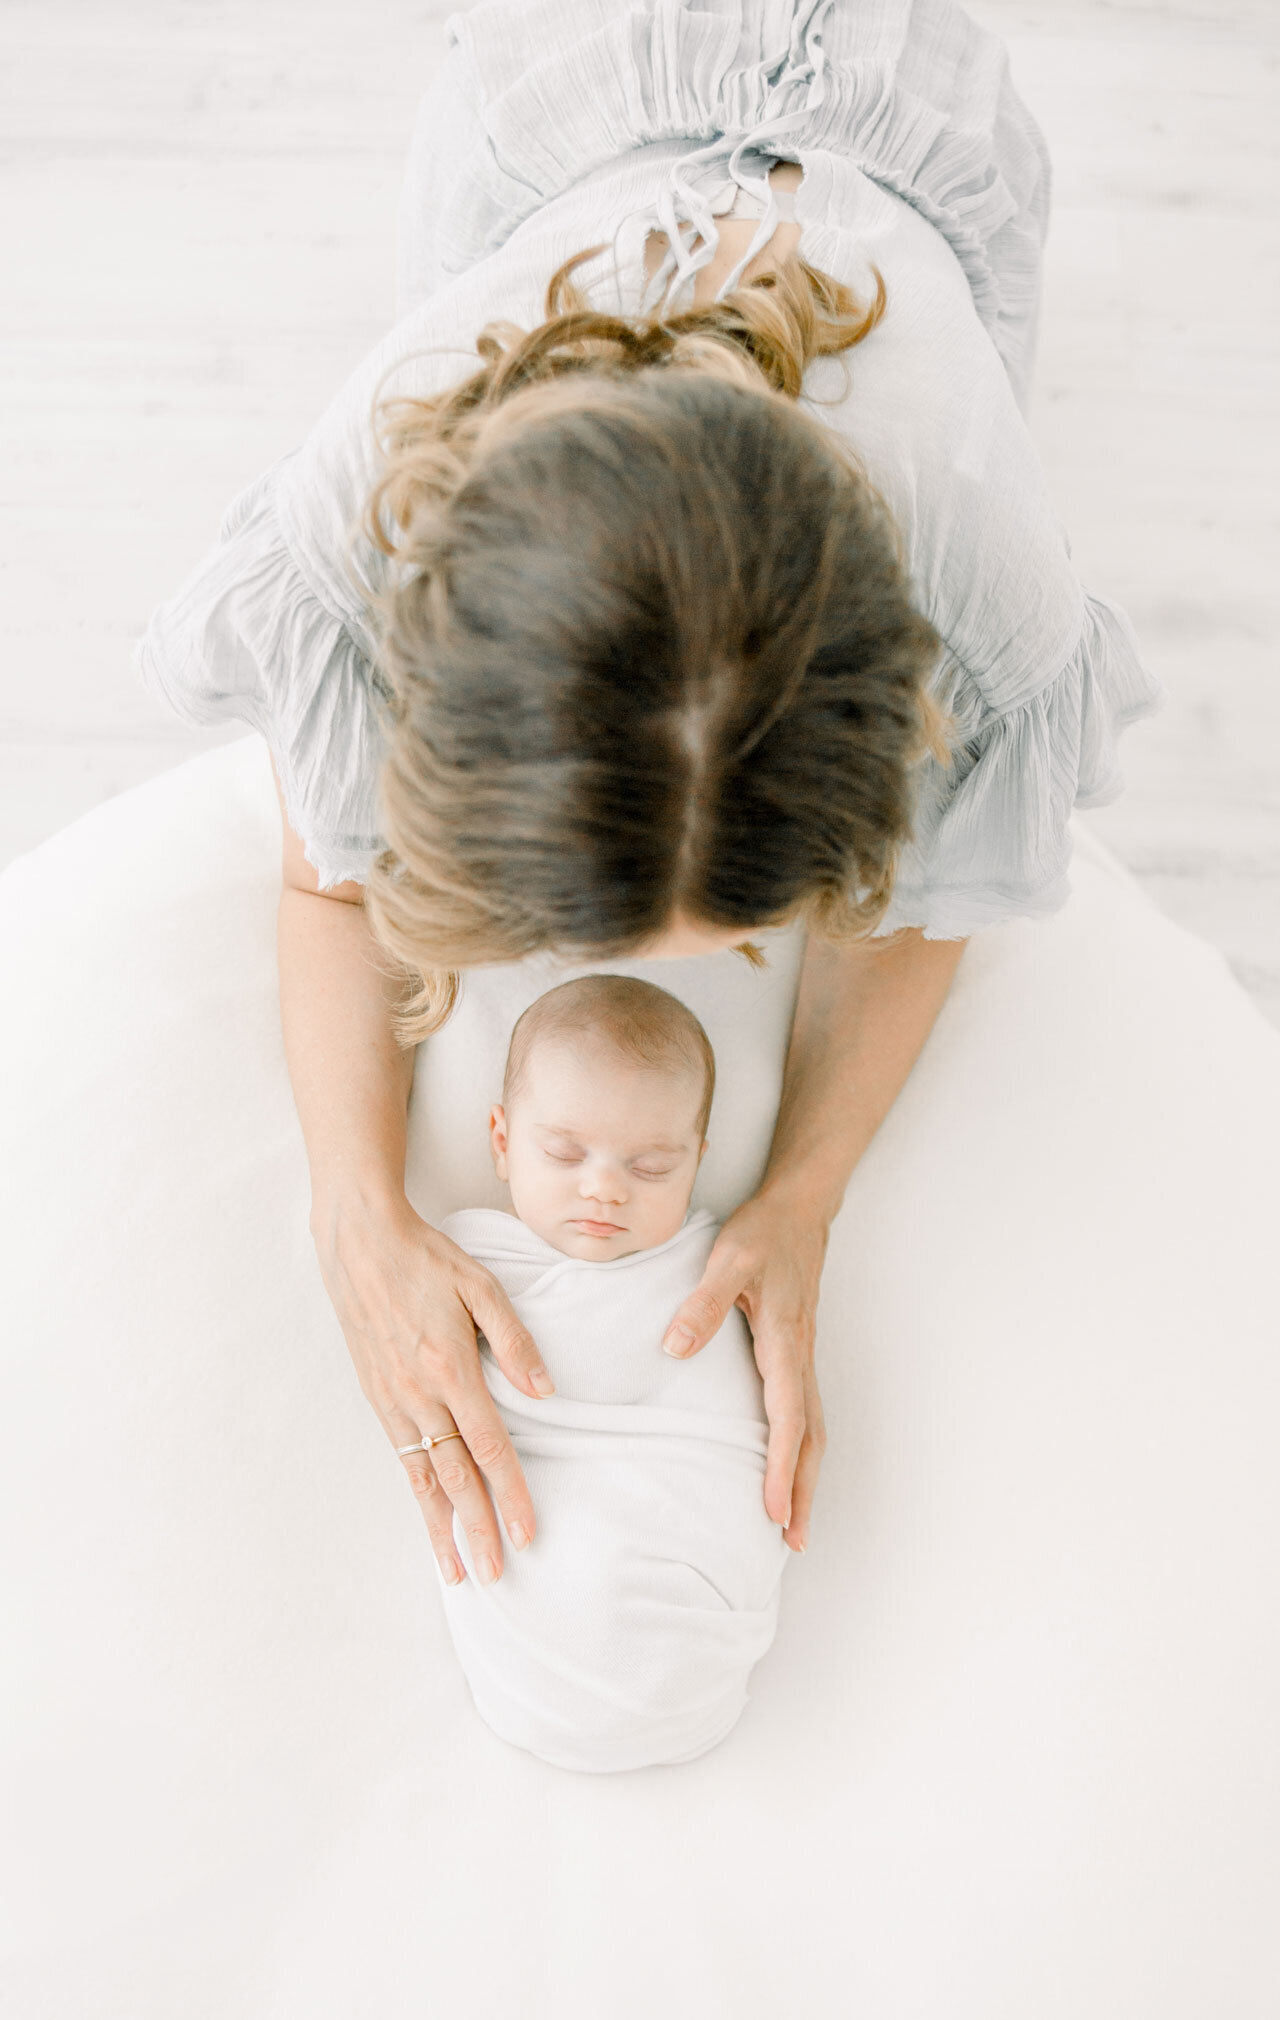 Neugeborenenfotografie aus der Vogelperspektive. Schlafendes Neugeborenes in weißer Decke. Die Mutter über dem Baby gebeugt und Hände aufgelegt.